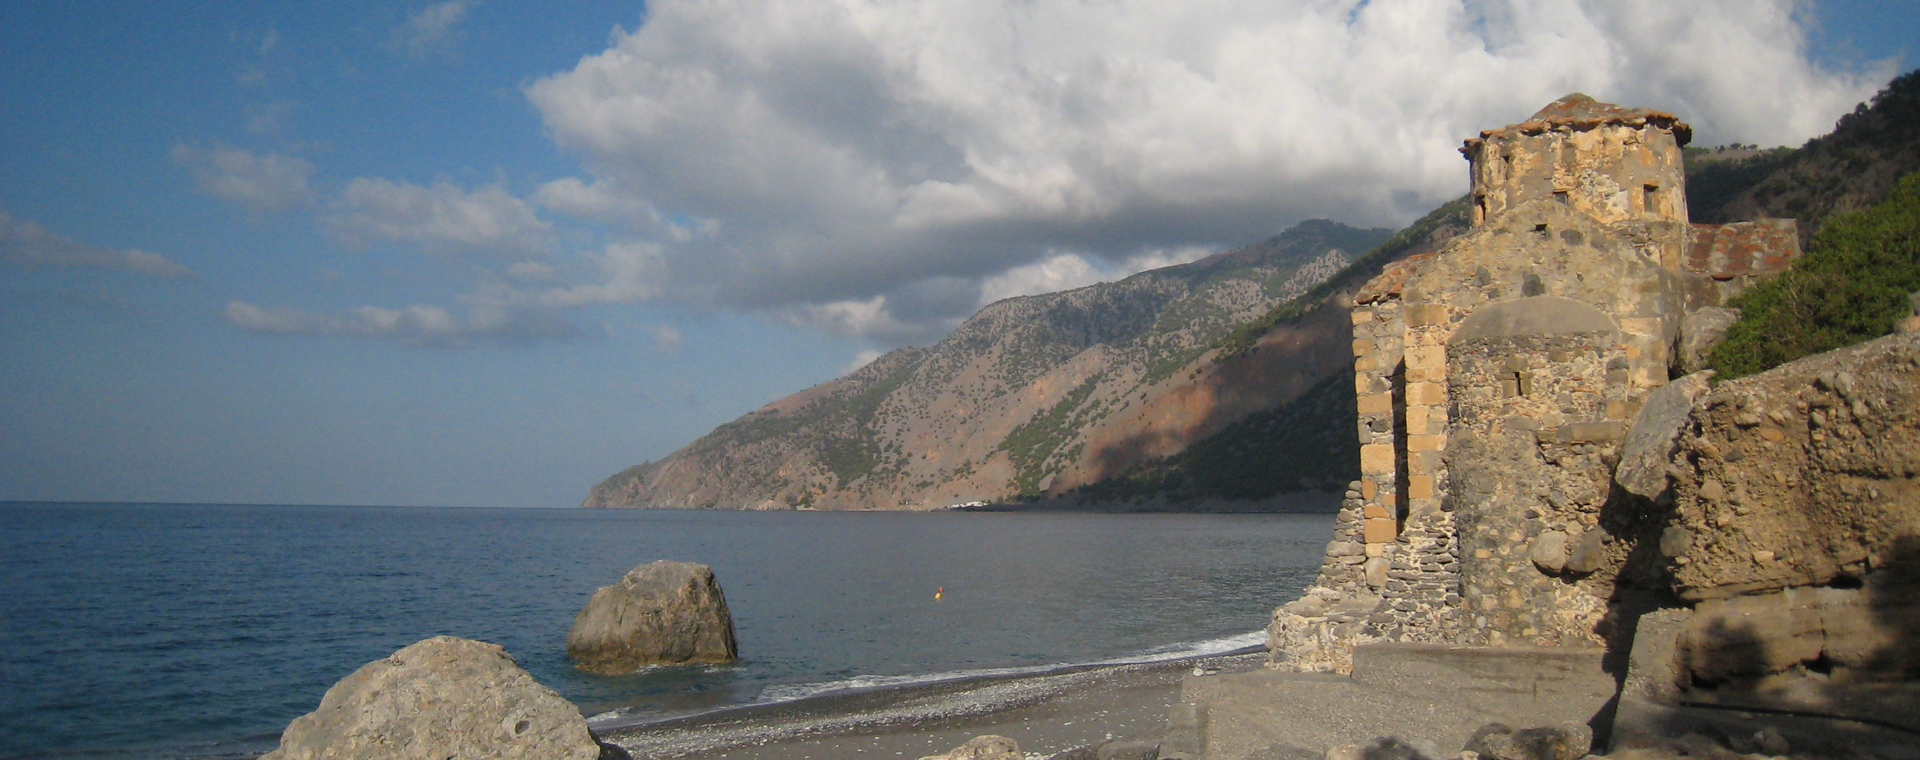 Crete, White mountains and azure sea